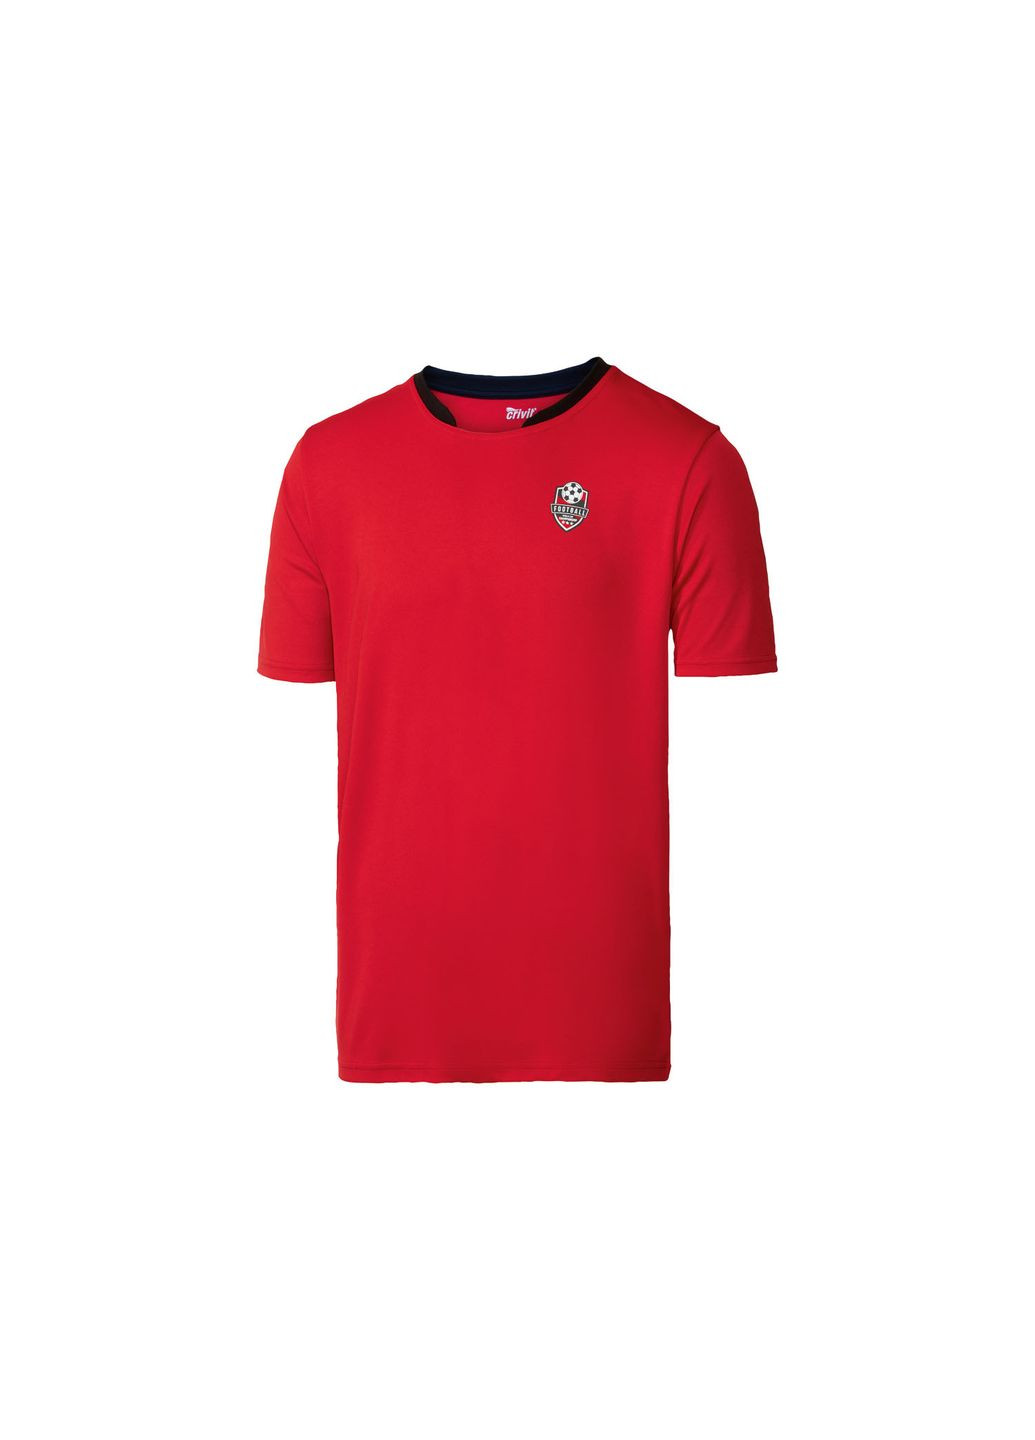 Красная спортивная футболка с быстросохнущей ткани для мужчины 411979 Crivit